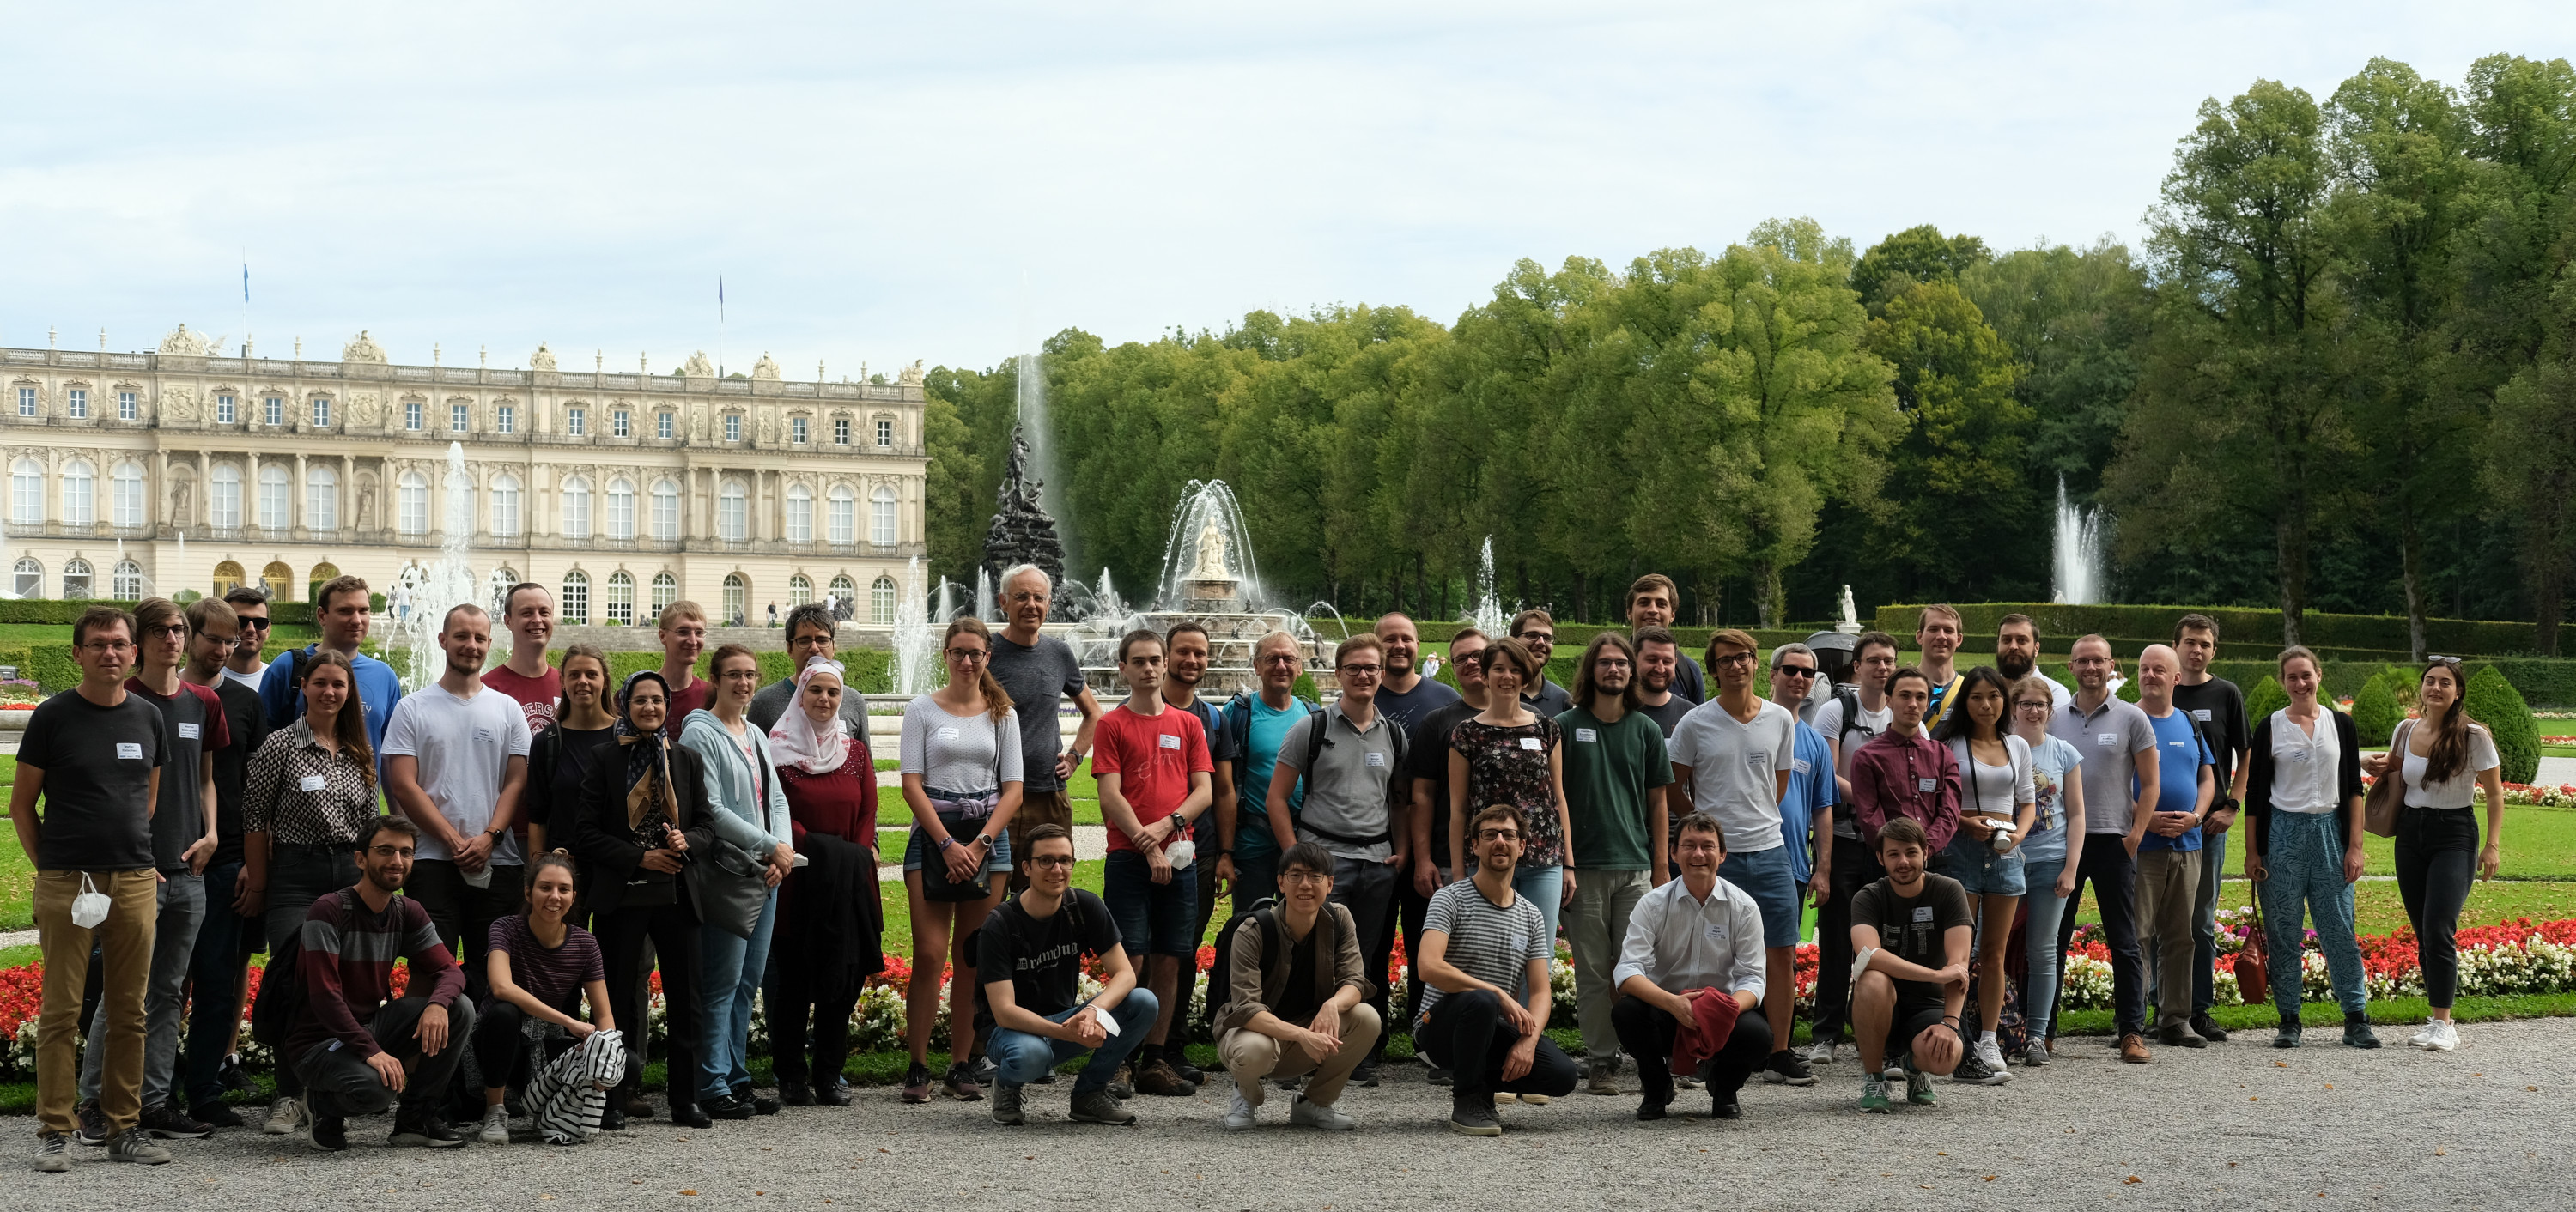 Participants of AVM 2022 in front of Schloss Herremchiemsee.